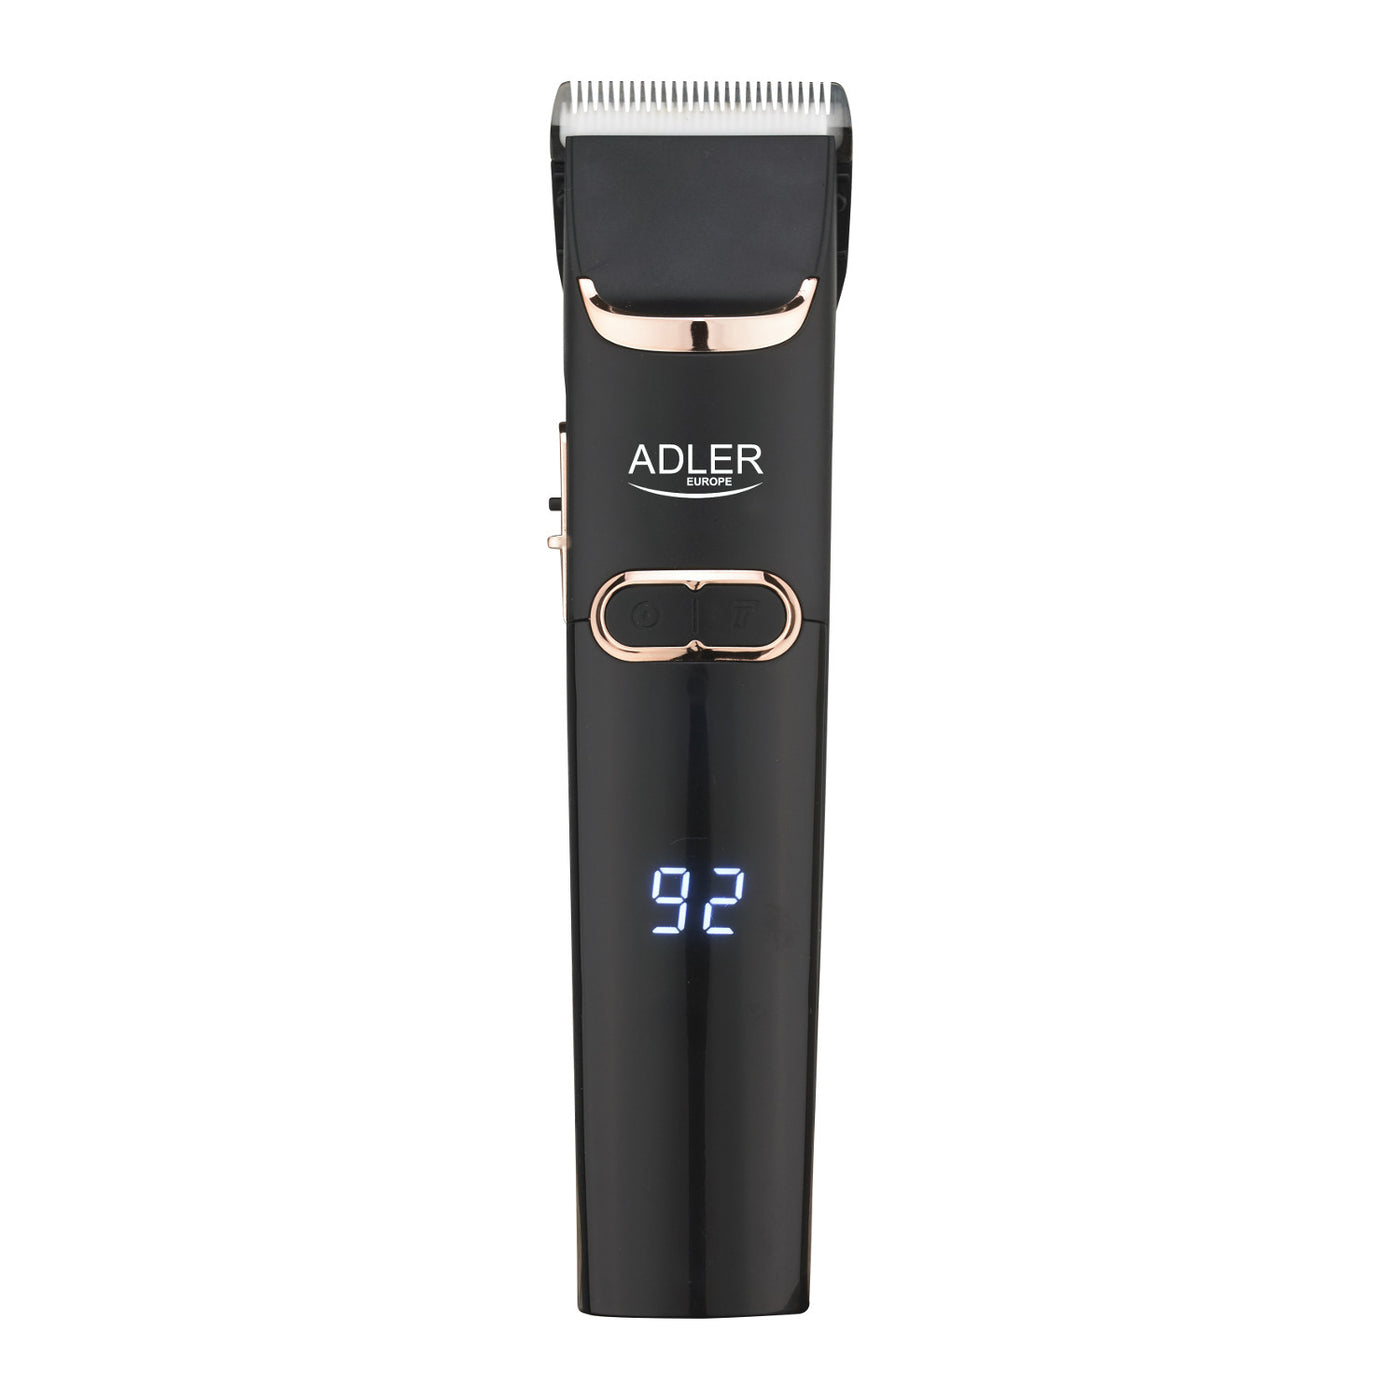 Maszynka do strzyżenia włosów Adler, wyświetlacz LCD, 40W, AD 2832